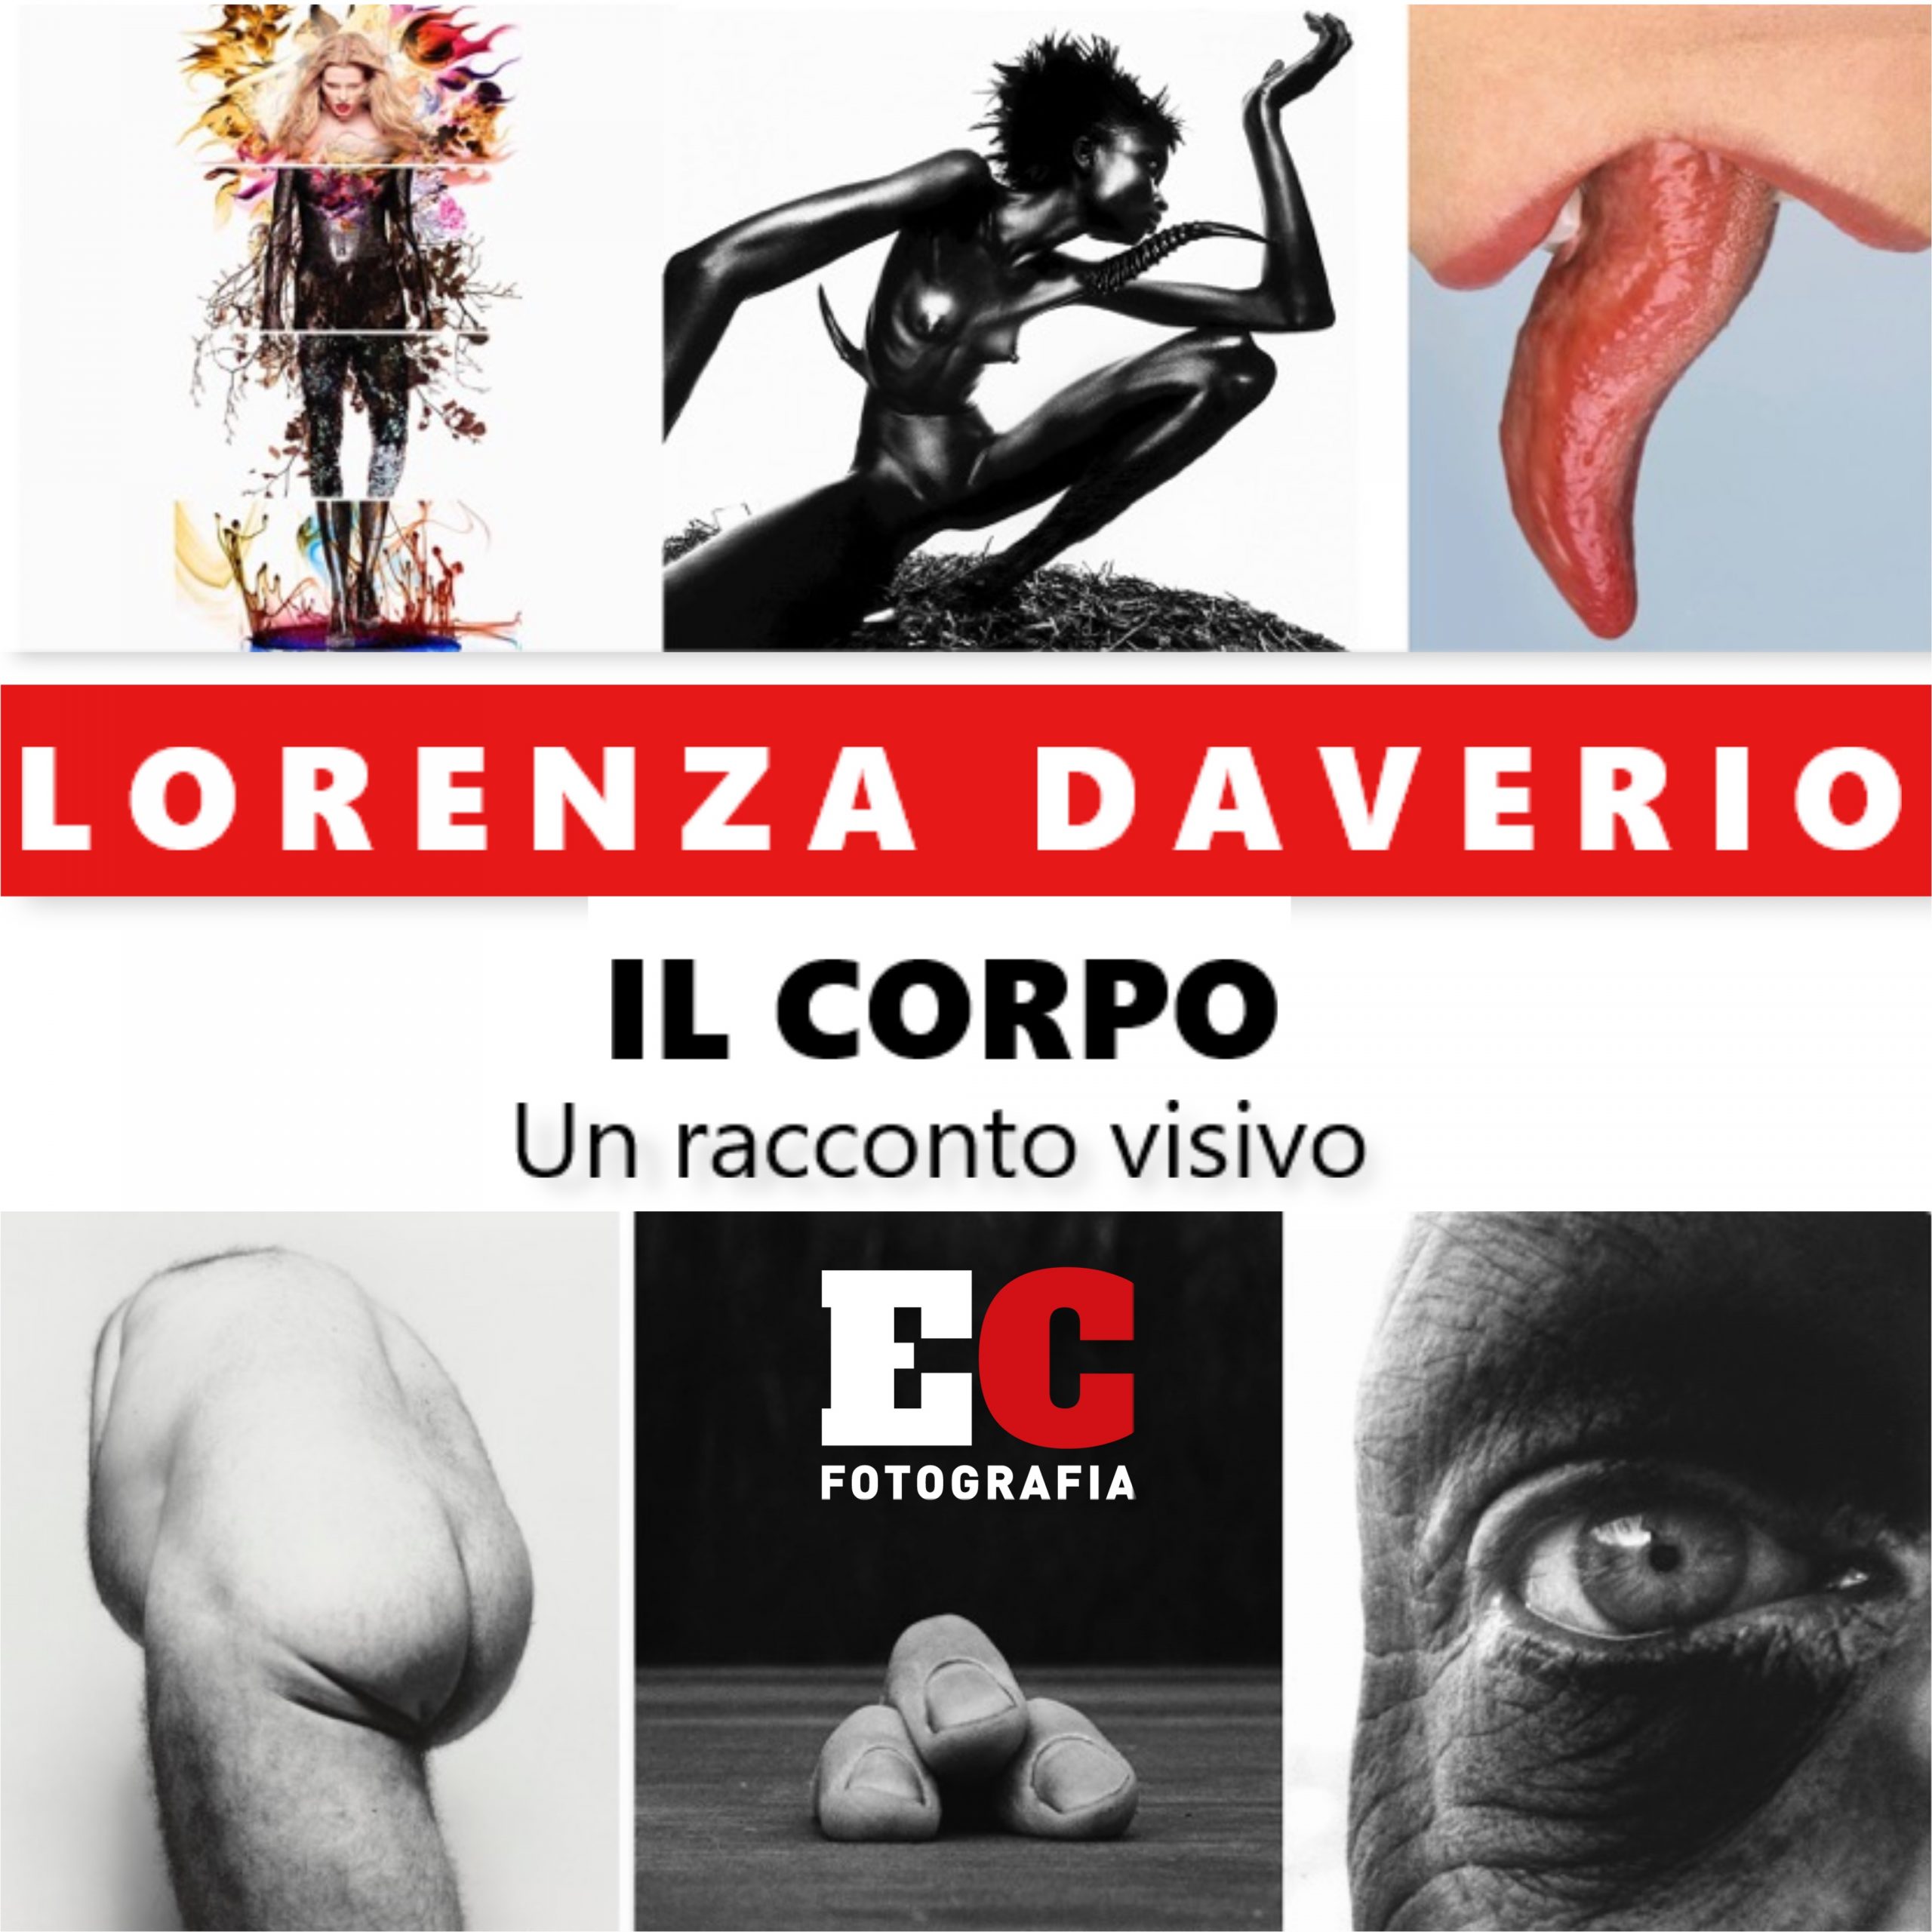 LORENZA DAVERIO Workshop IL CORPO